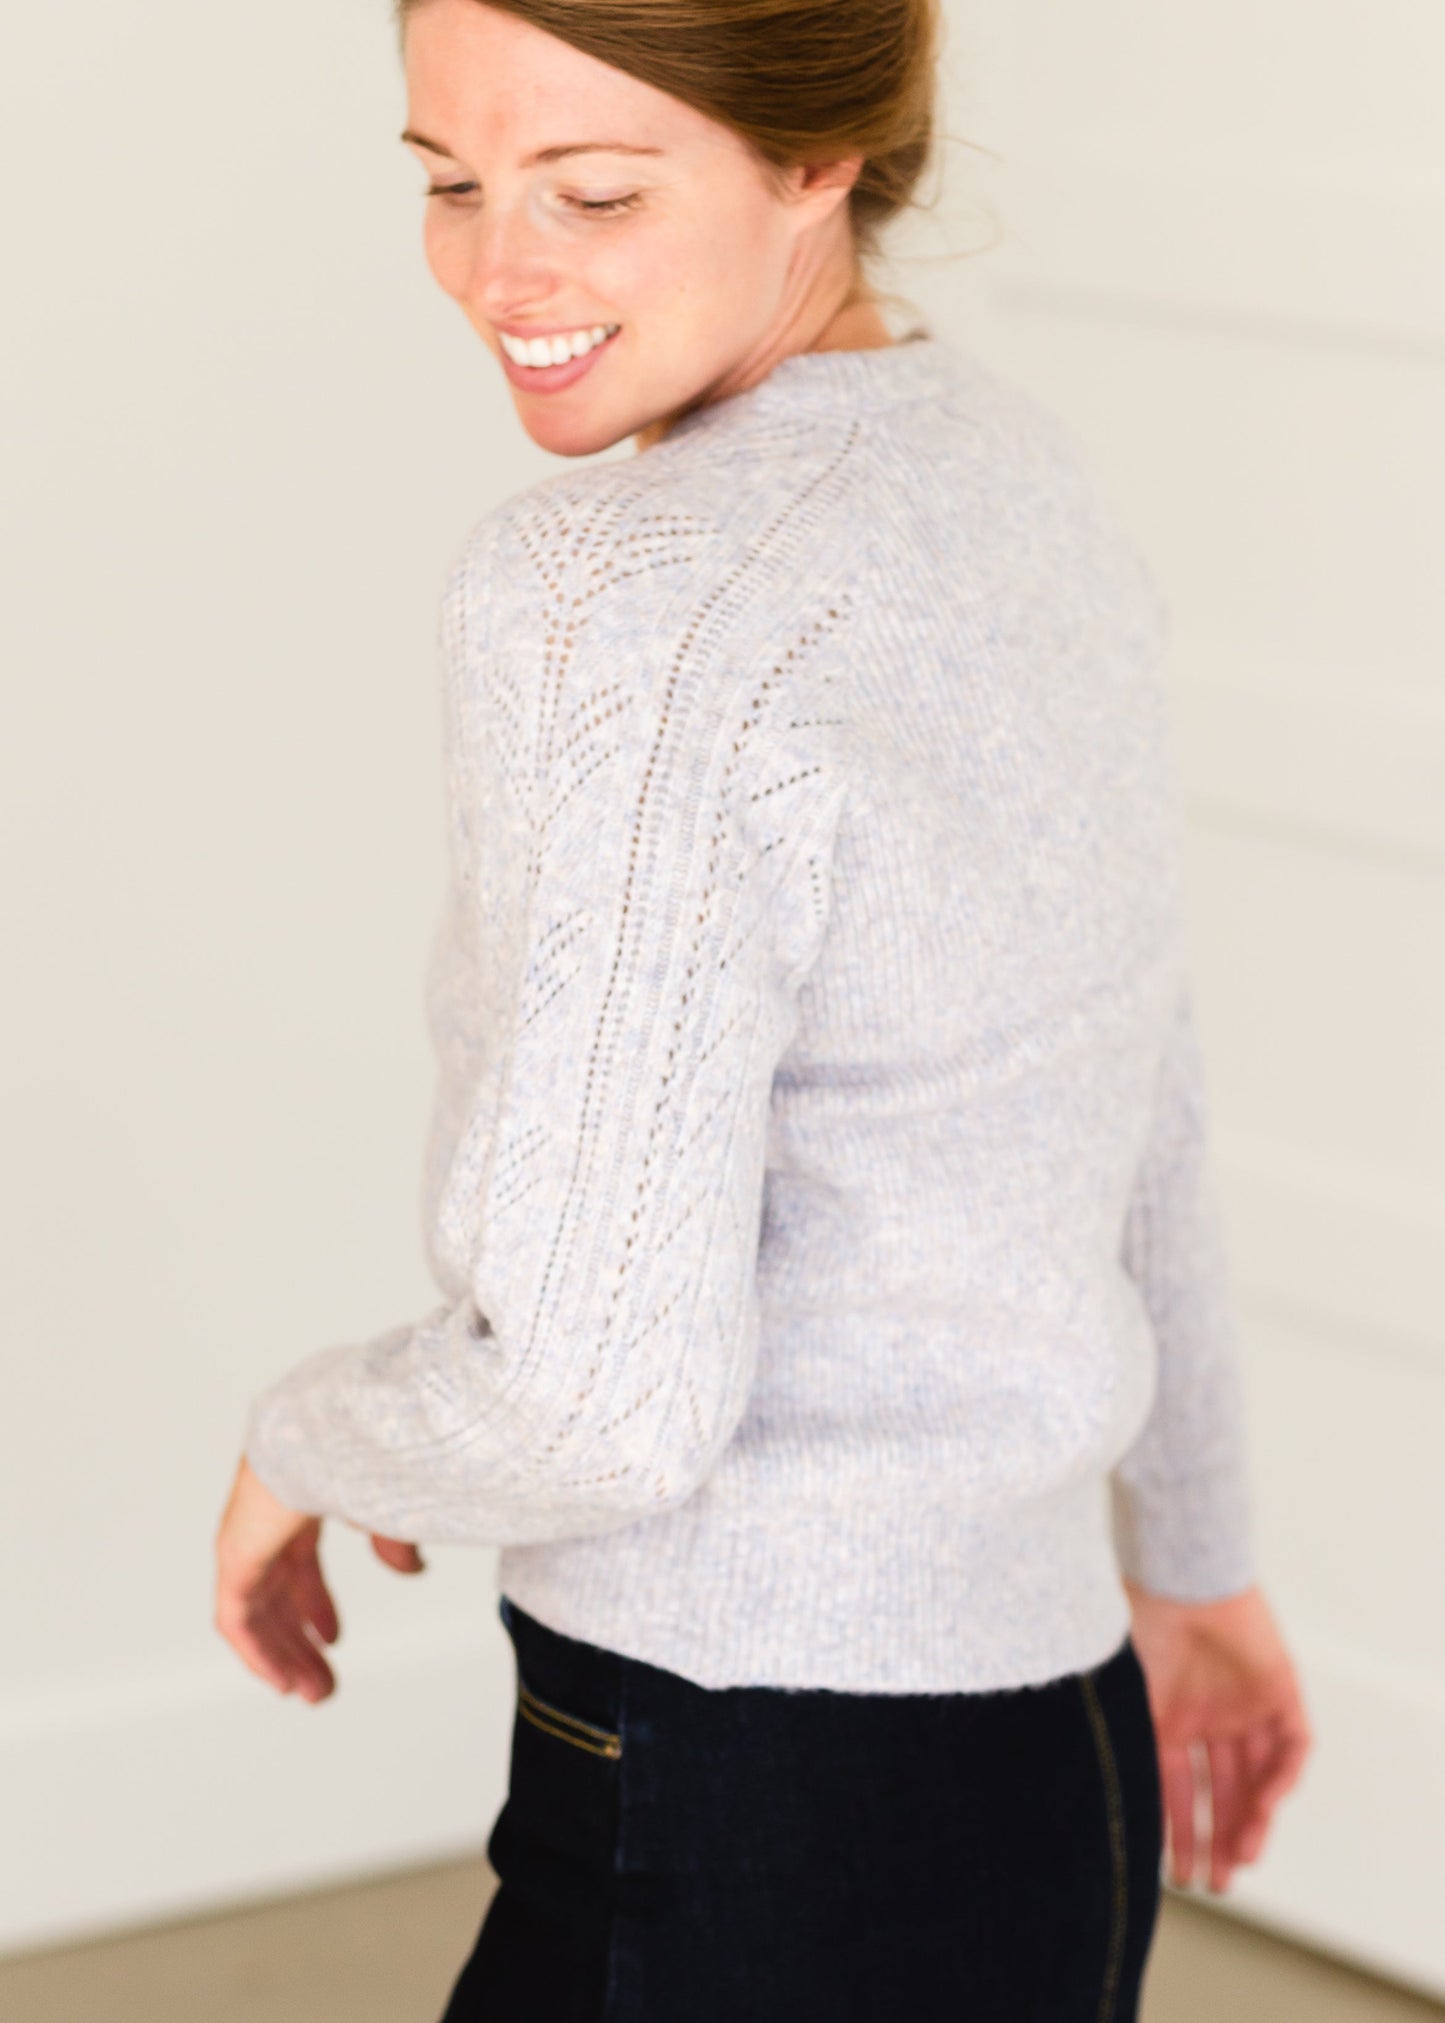 Heartloom Devon Sweater - FINAL SALE Shirt